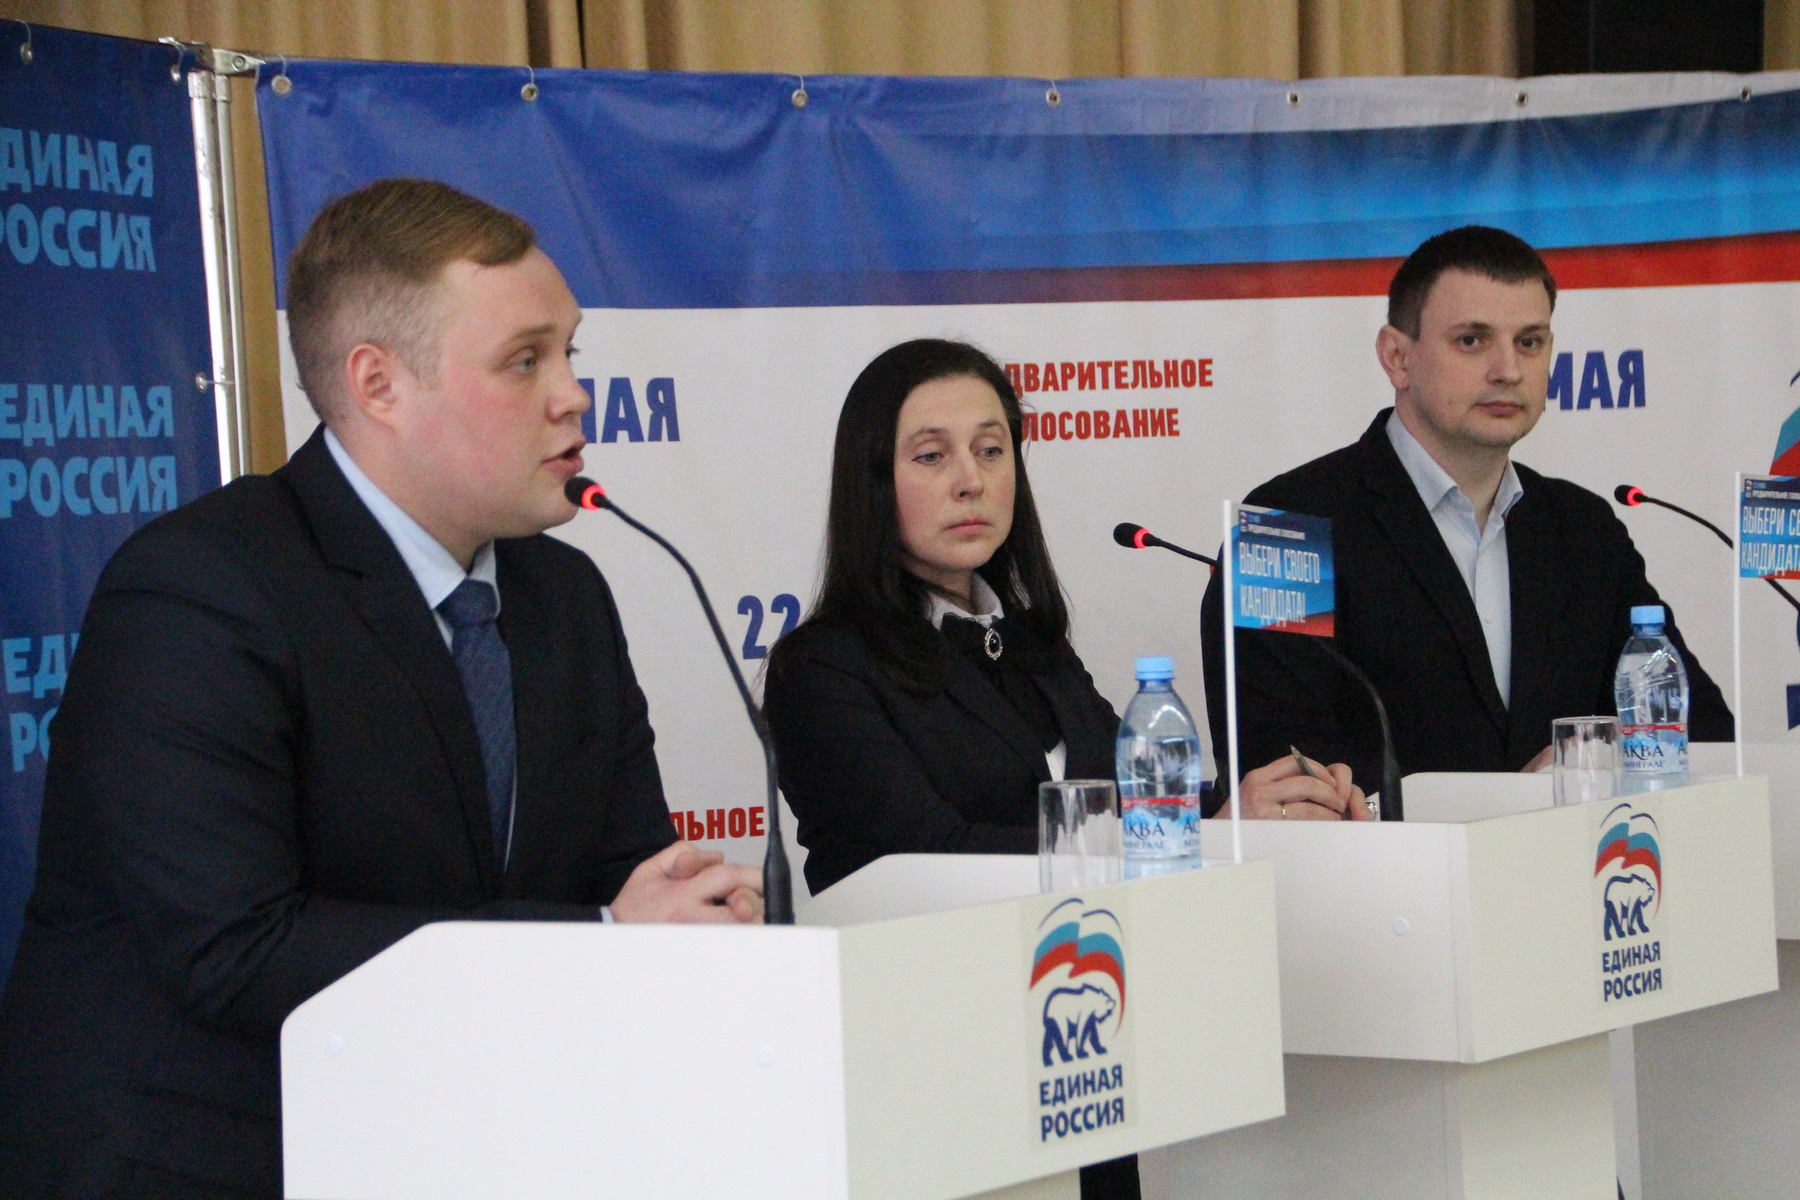    Дебаты участников предварительного голосования в регионах РФ. Тула